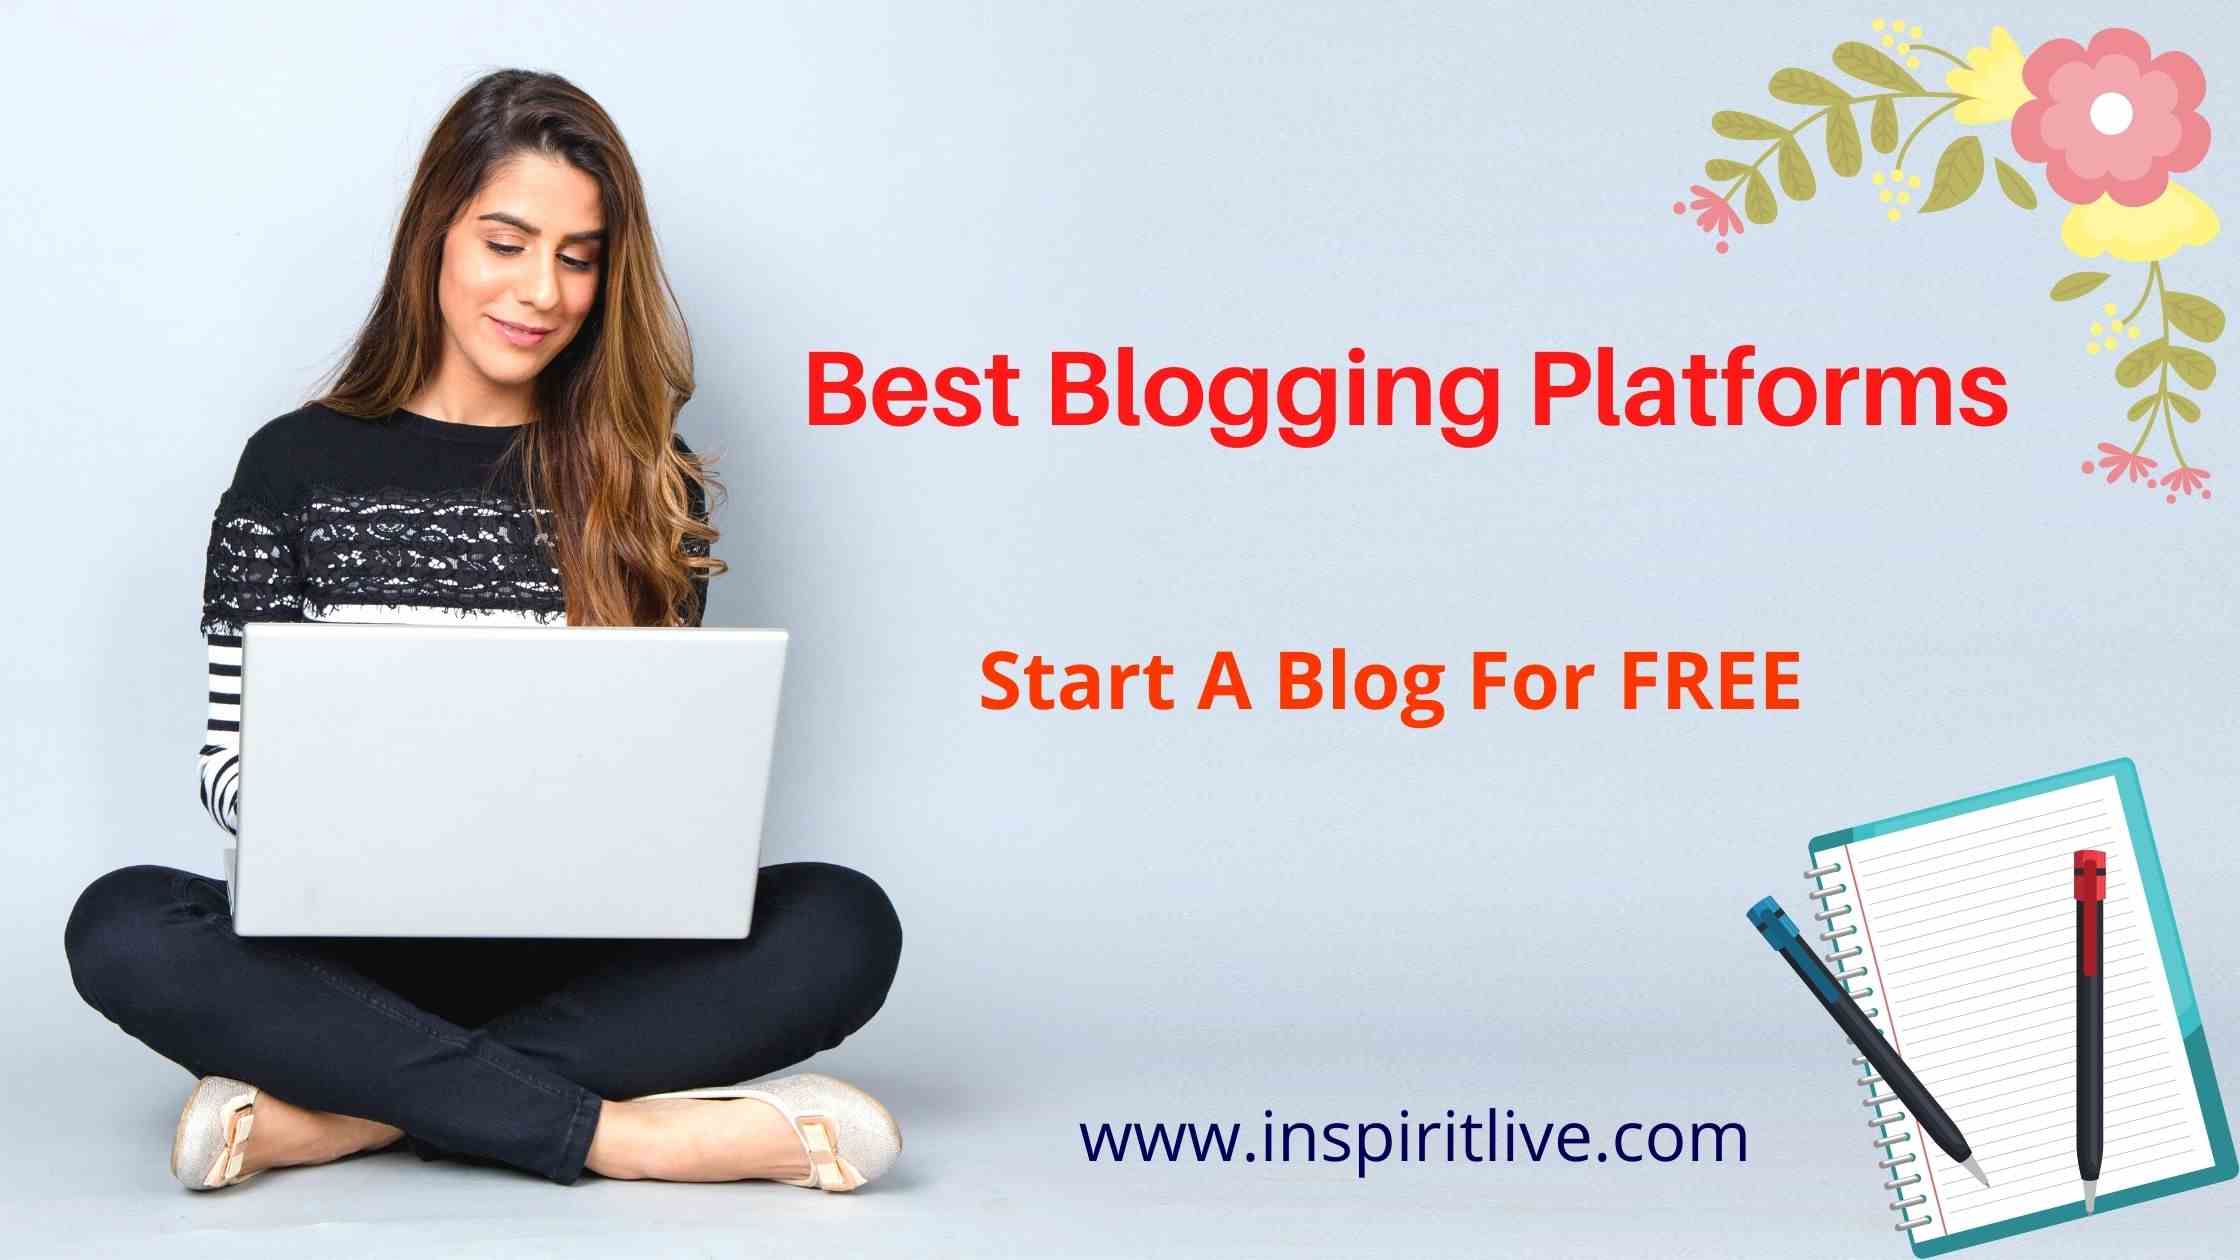 Best Blogging Platforms To Start A Blog For FREE